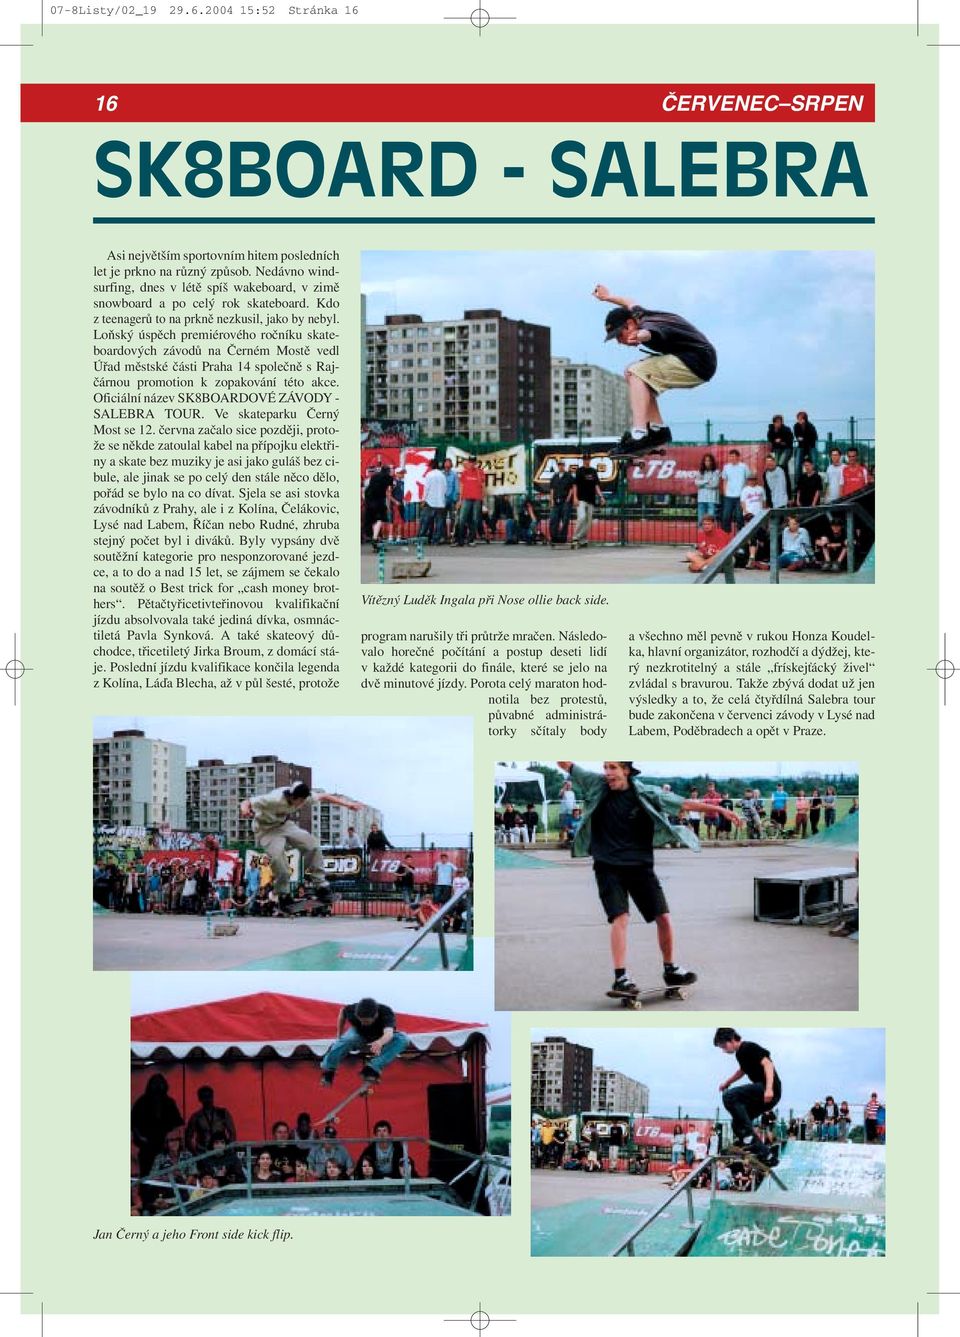 Loňský úspěch premiérového ročníku skateboardových závodů na Černém Mostě vedl Úřad městské části Praha 14 společně s Rajčárnou promotion k zopakování této akce.